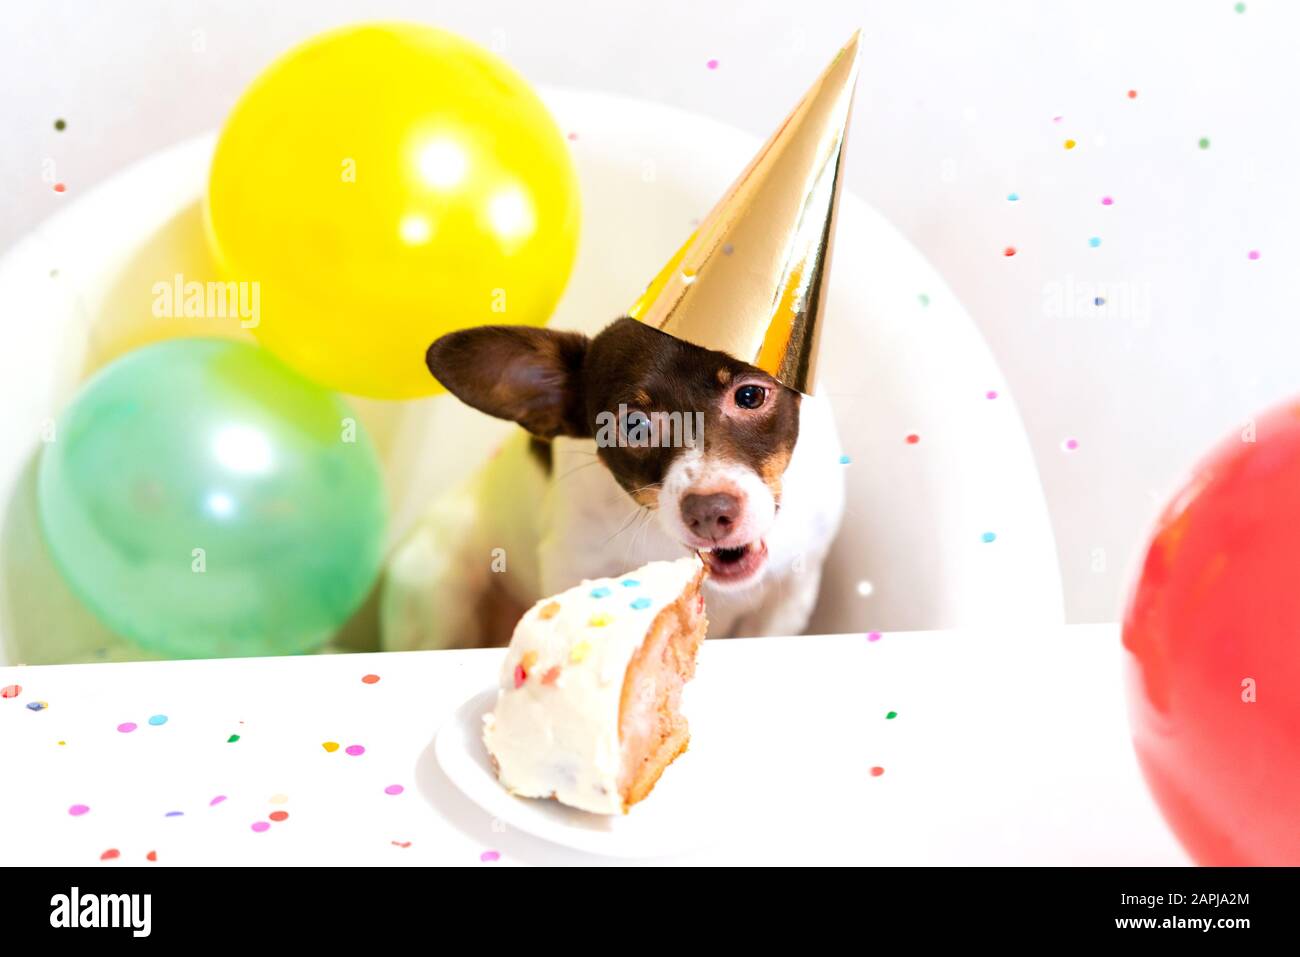 Niedlicher kleiner lustiger Hund in Partyhut mit Geburtstagskuchen, der Geburtstagskuchen zum Geburtstag isst. Geburtstagsparty für Hunde. Häusliches Tierliebe- und Verwöhnkonzept. Stockfoto